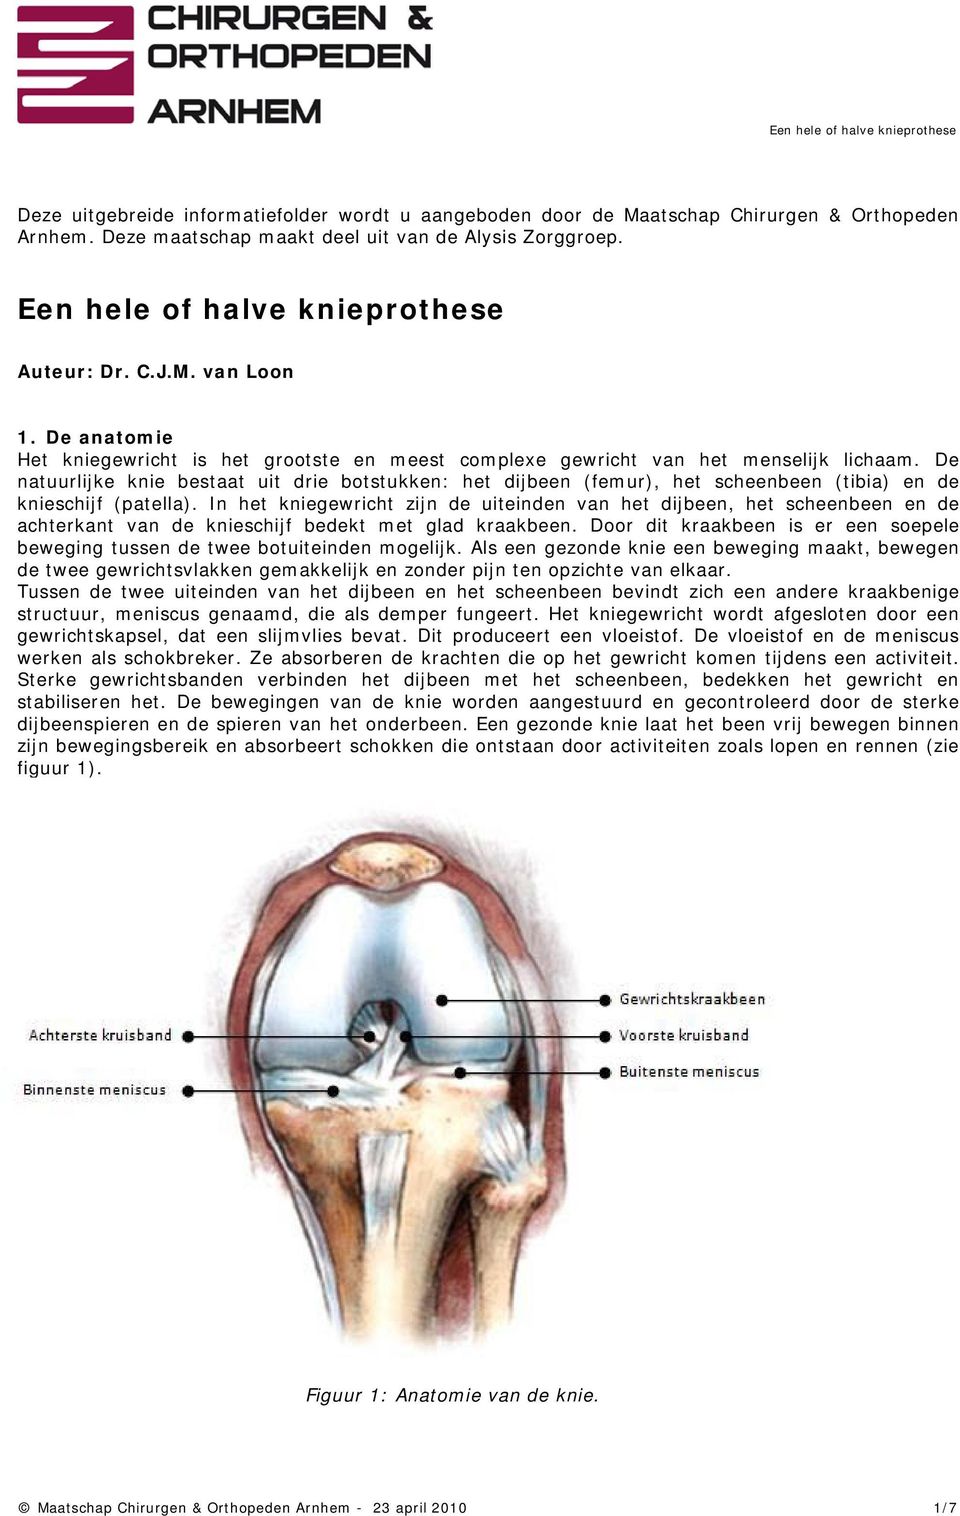 De natuurlijke knie bestaat uit drie botstukken: het dijbeen (femur), het scheenbeen (tibia) en de knieschijf (patella).